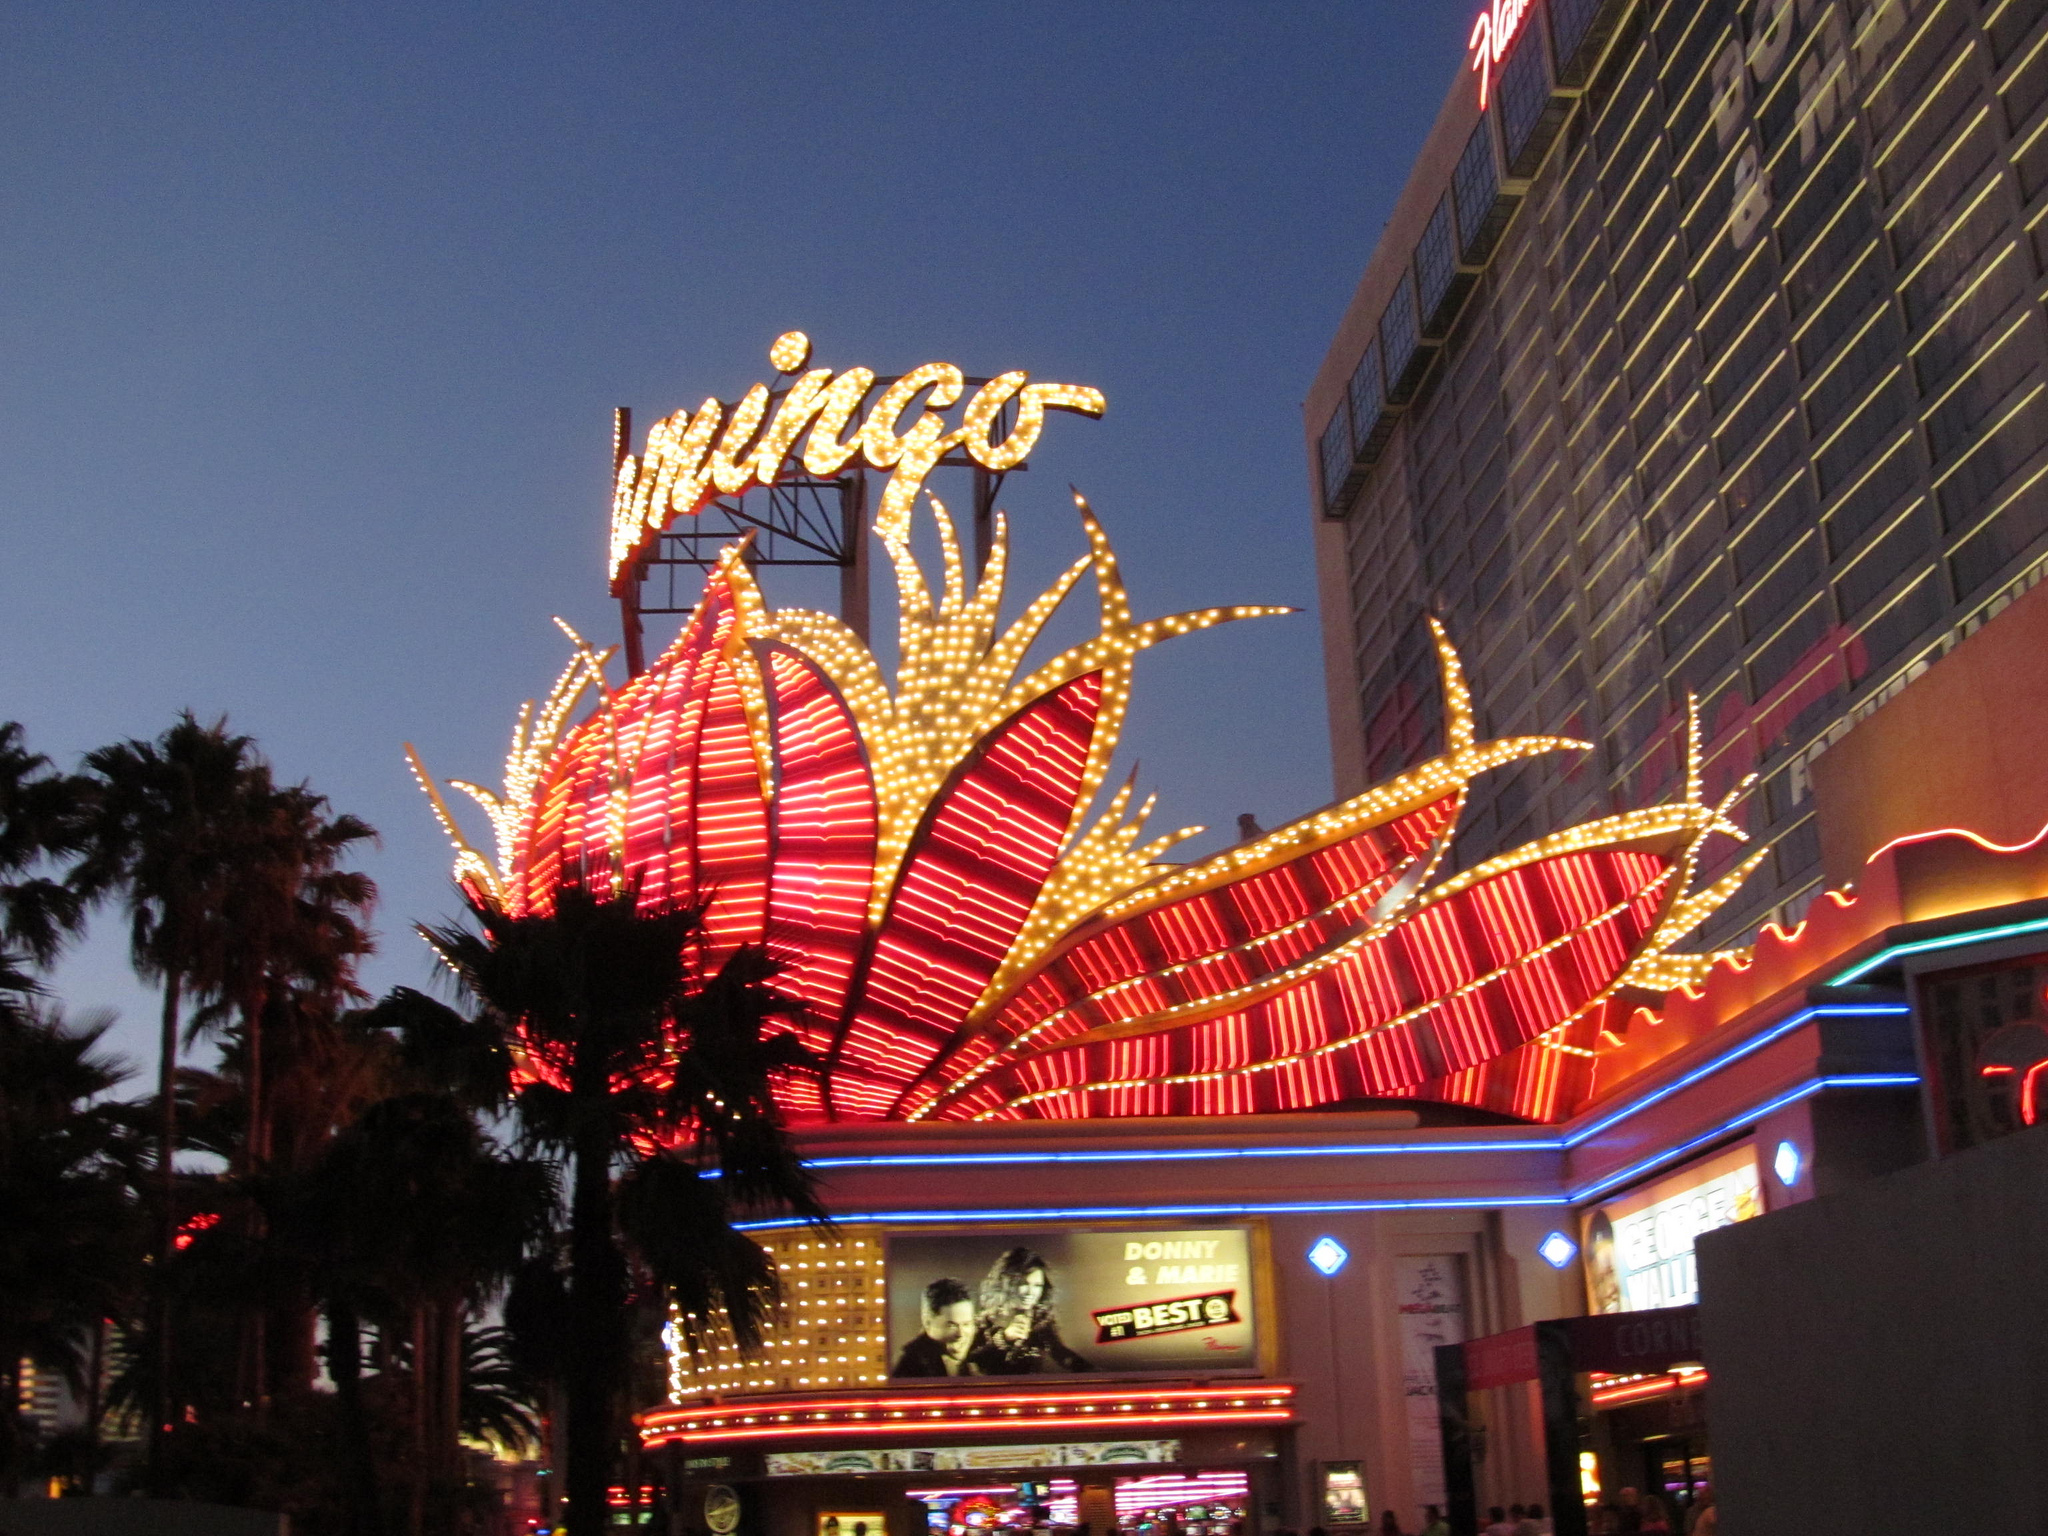 The Flamingo Vegas